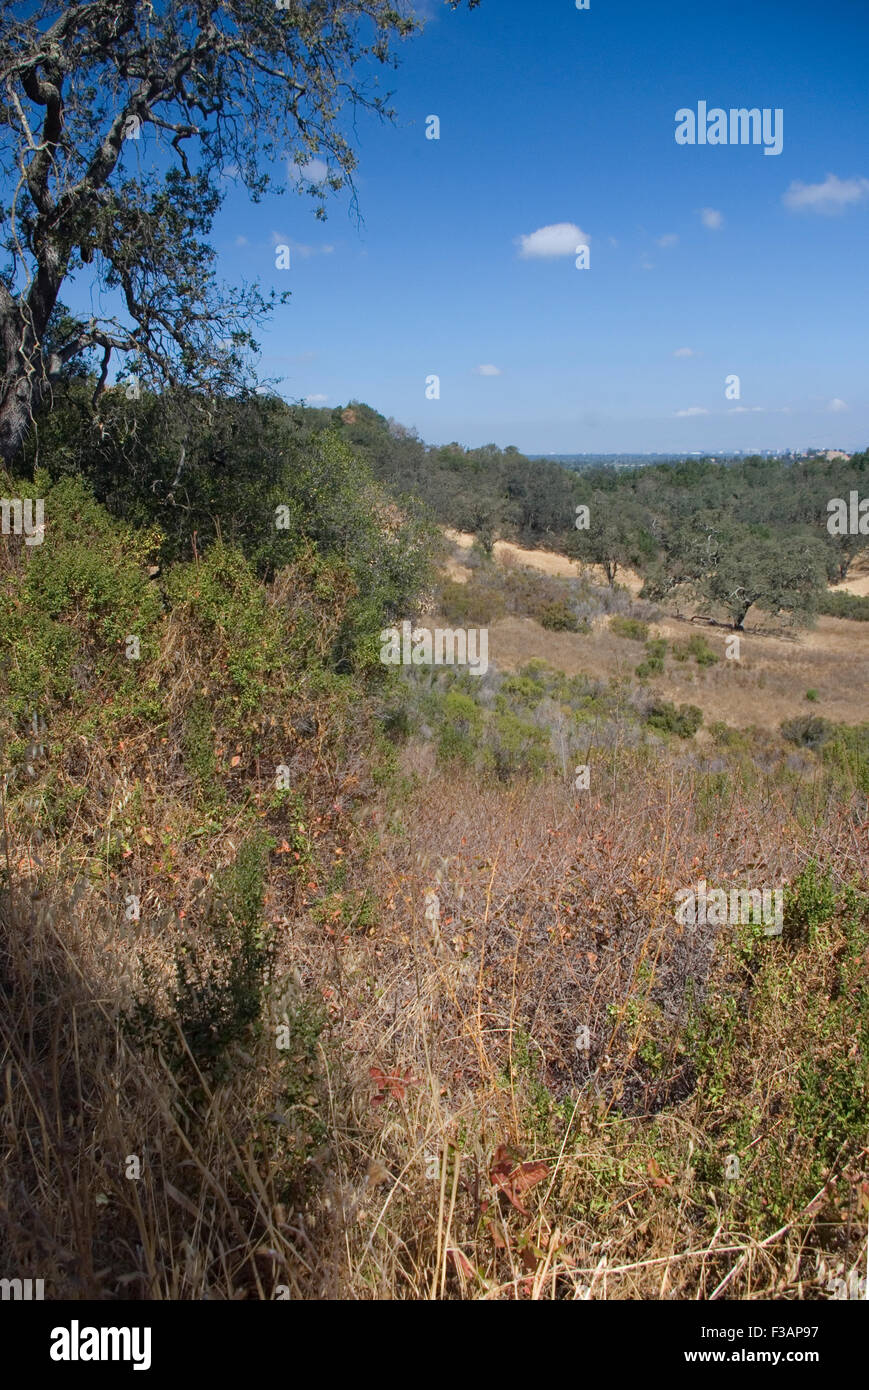 View over Almaden Quicksilver County Park, San Jose, California Stock Photo